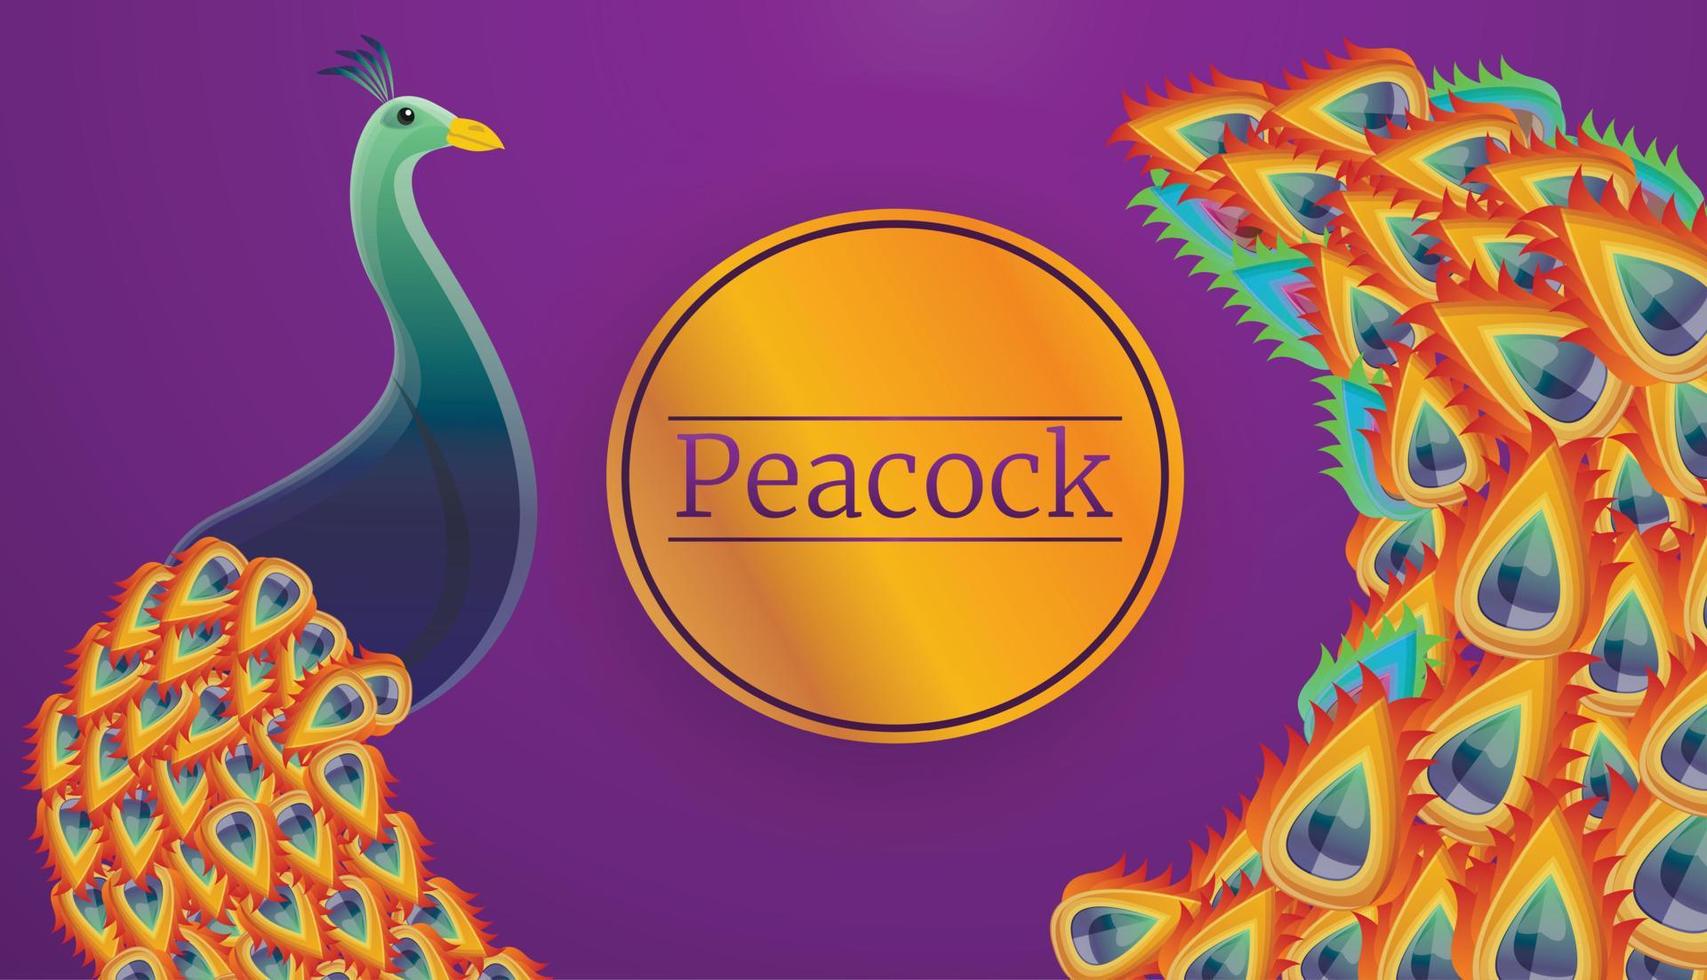 Peacock bird concept banner, cartoon style vector